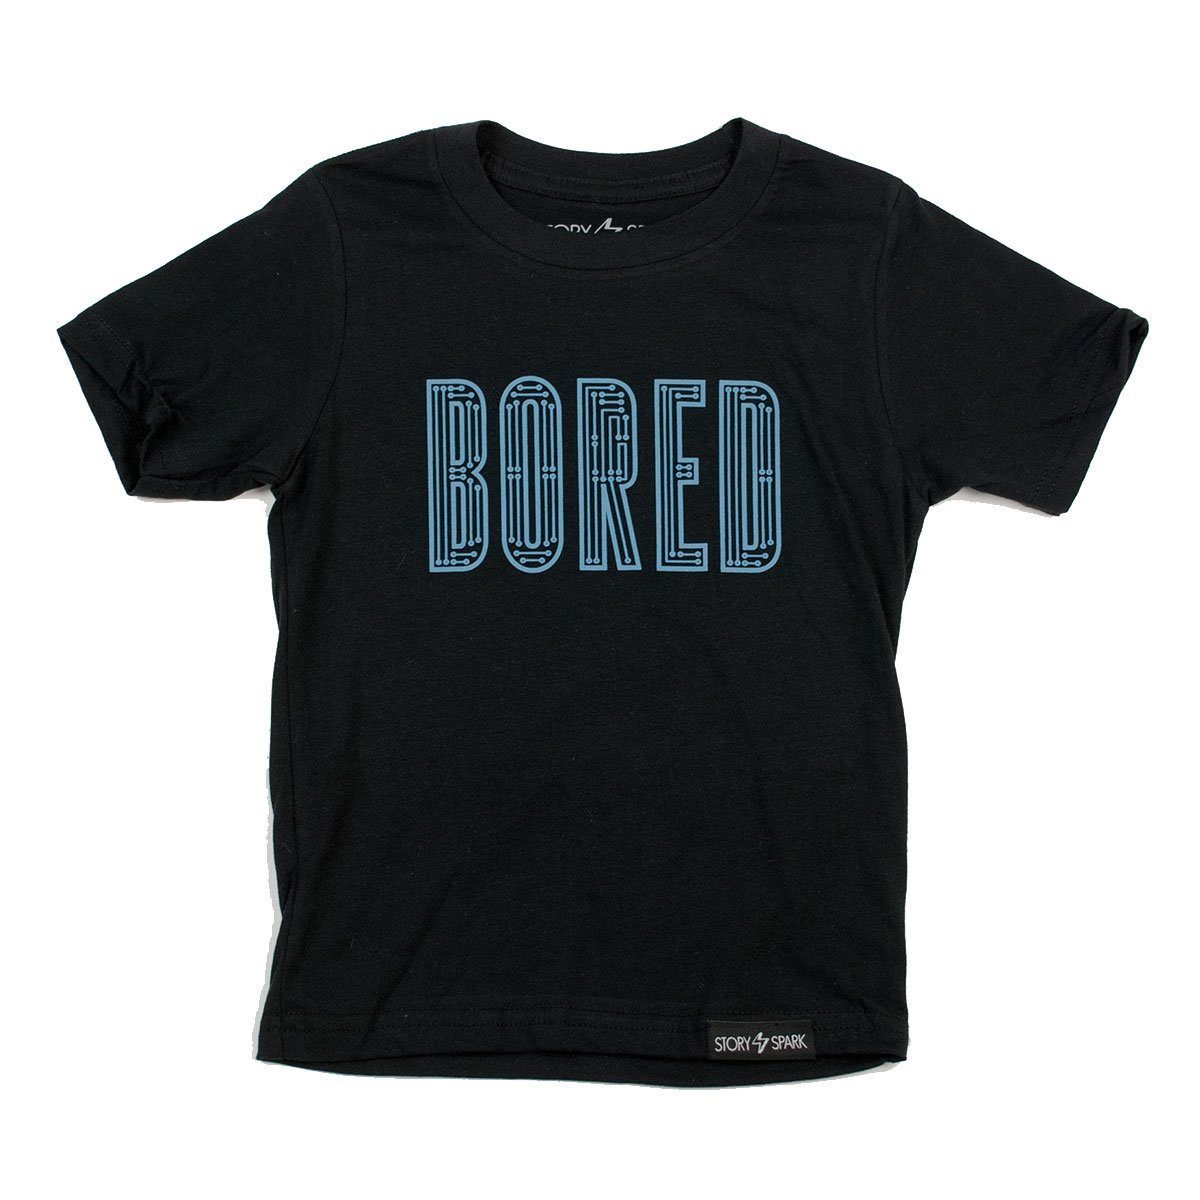 Bored Kids T-Shirt